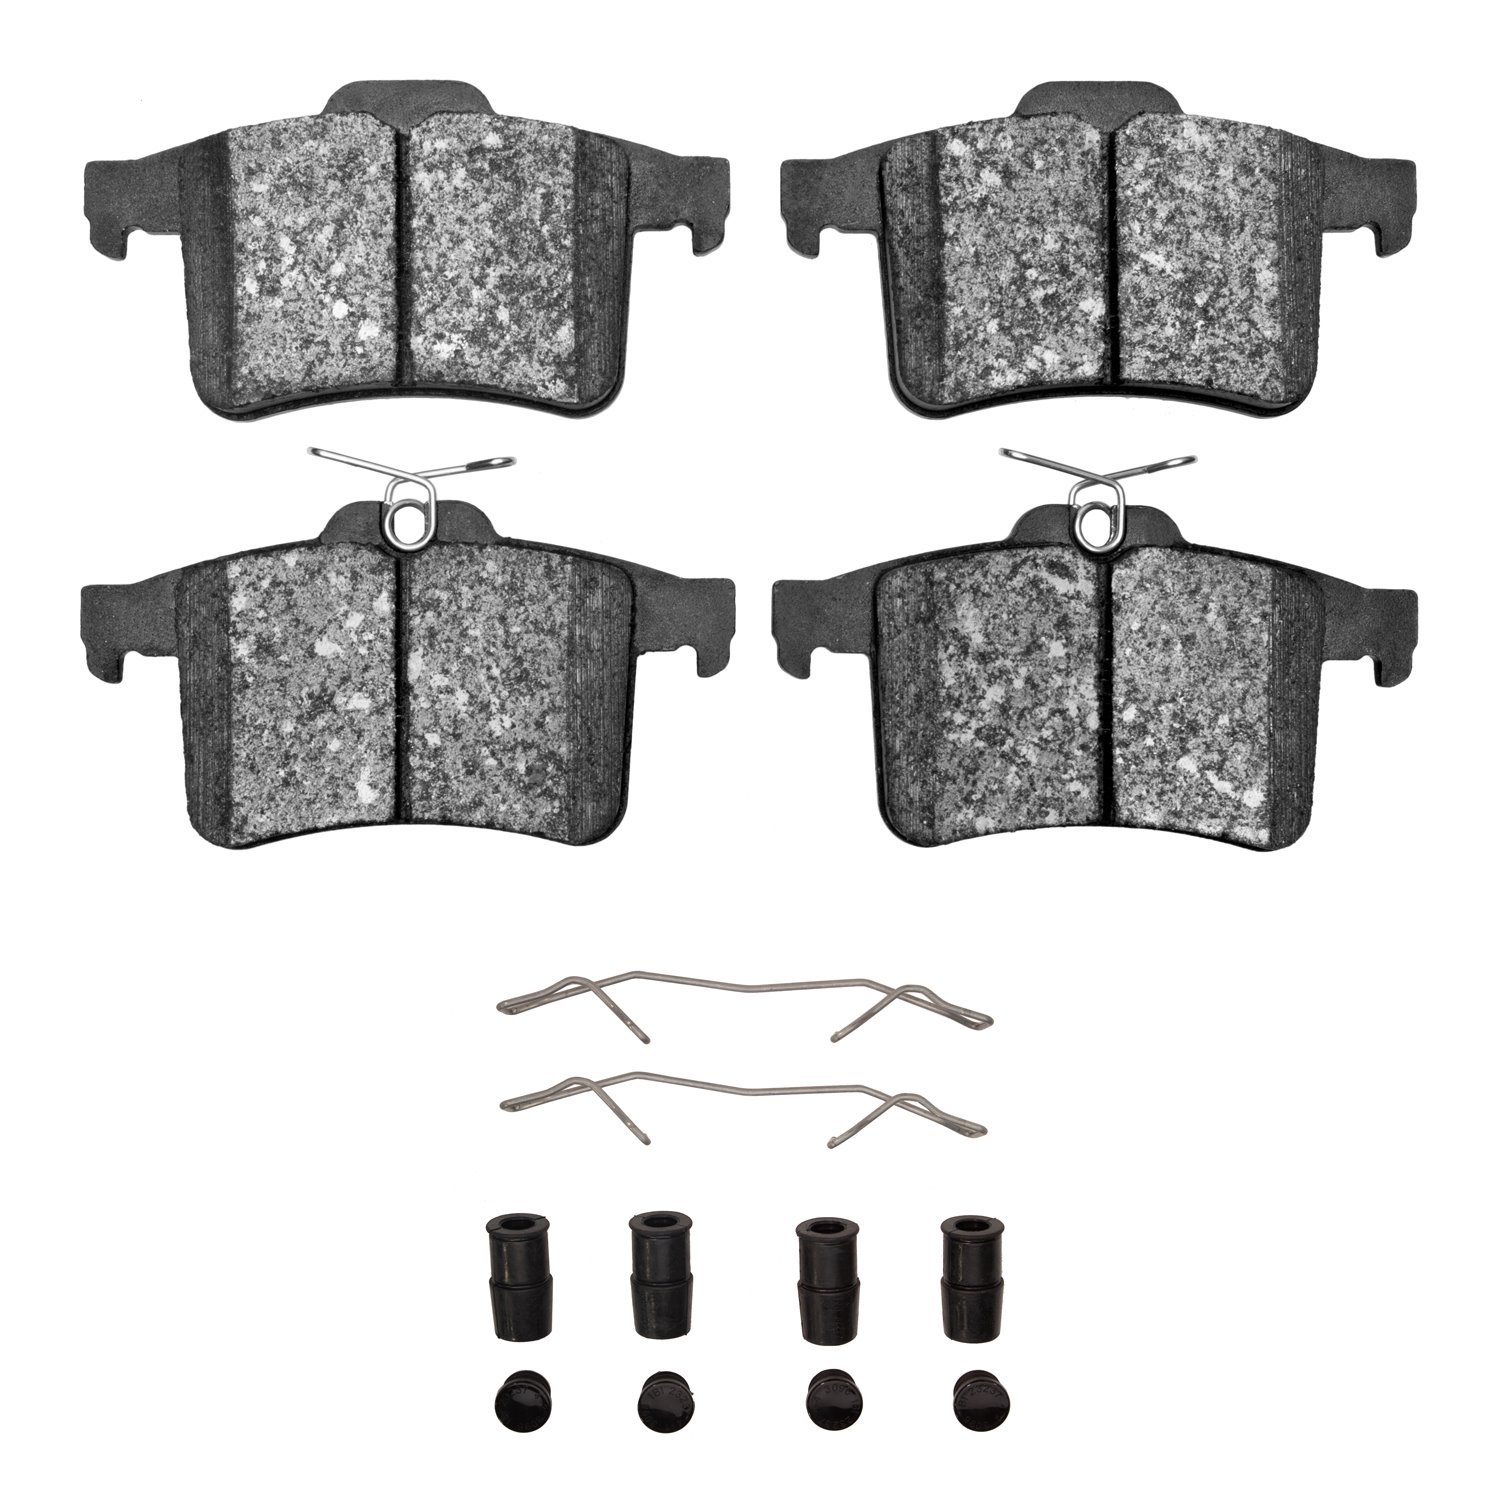 1551-1449-01 5000 Advanced Low-Metallic Brake Pads & Hardware Kit, 2010-2018 Jaguar, Position: Rear